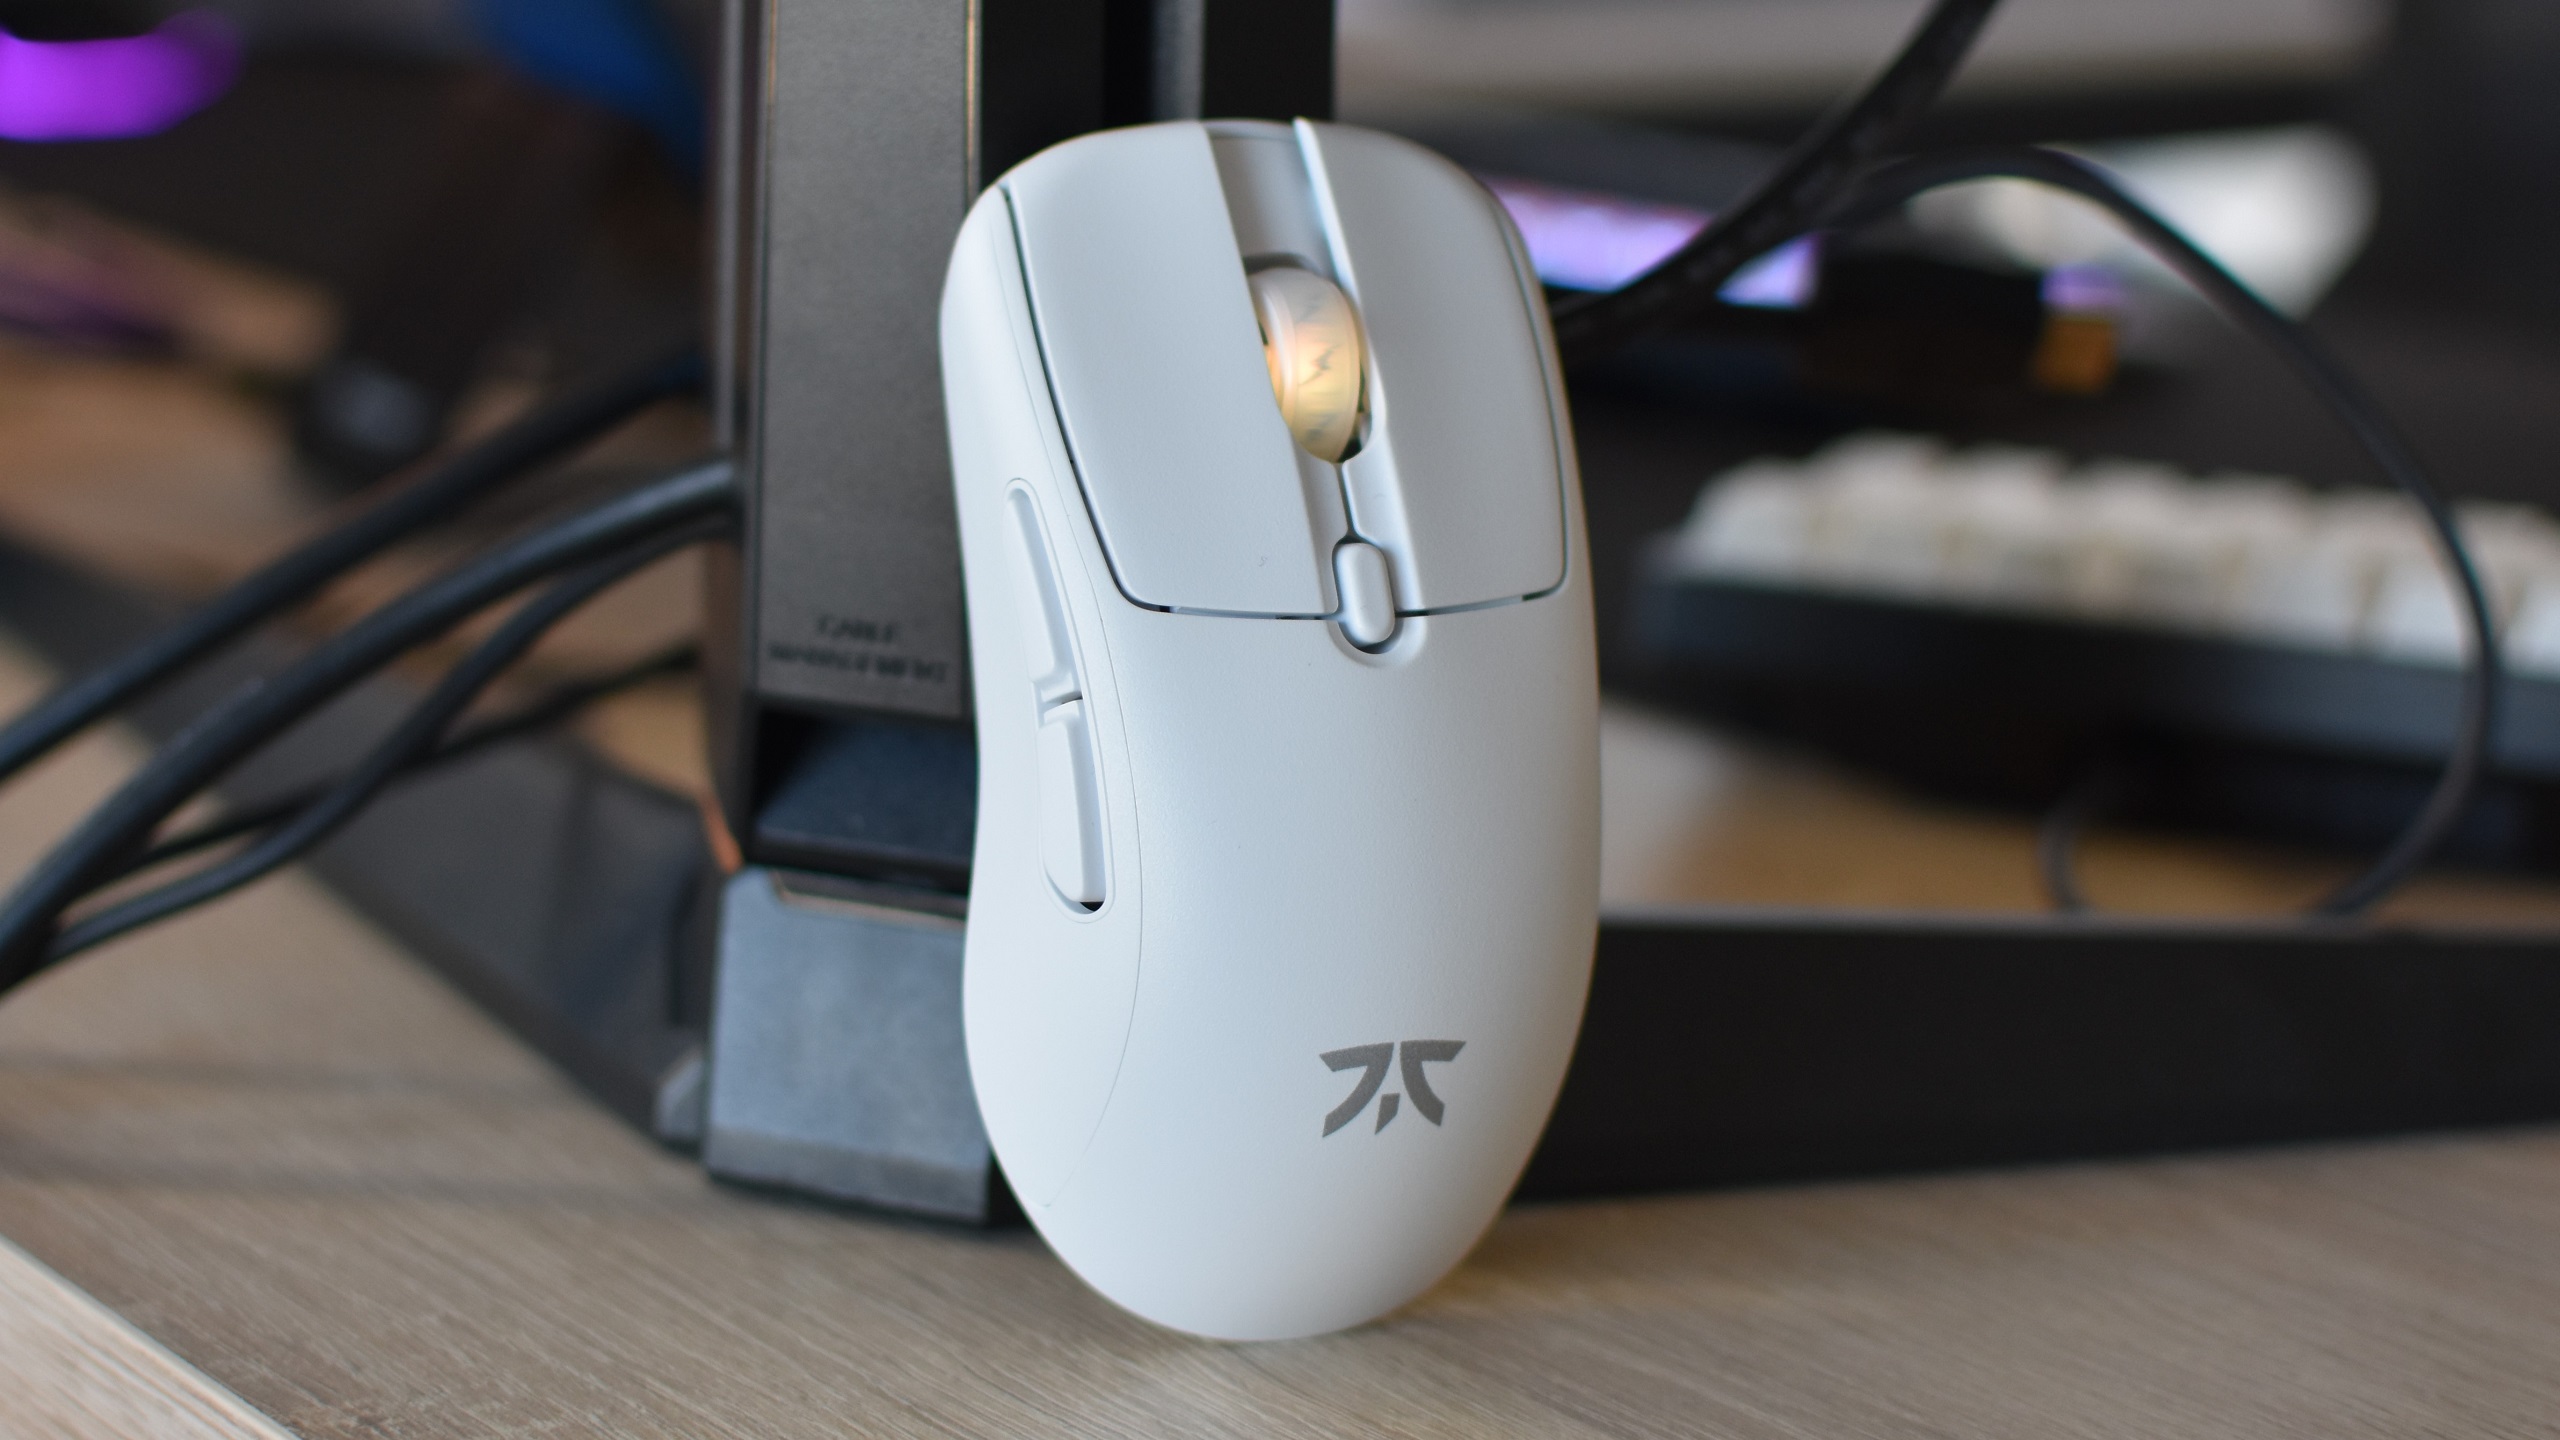 Fnatic Bolt Gaming-Maus, die auf einem Monitorständer ruht.